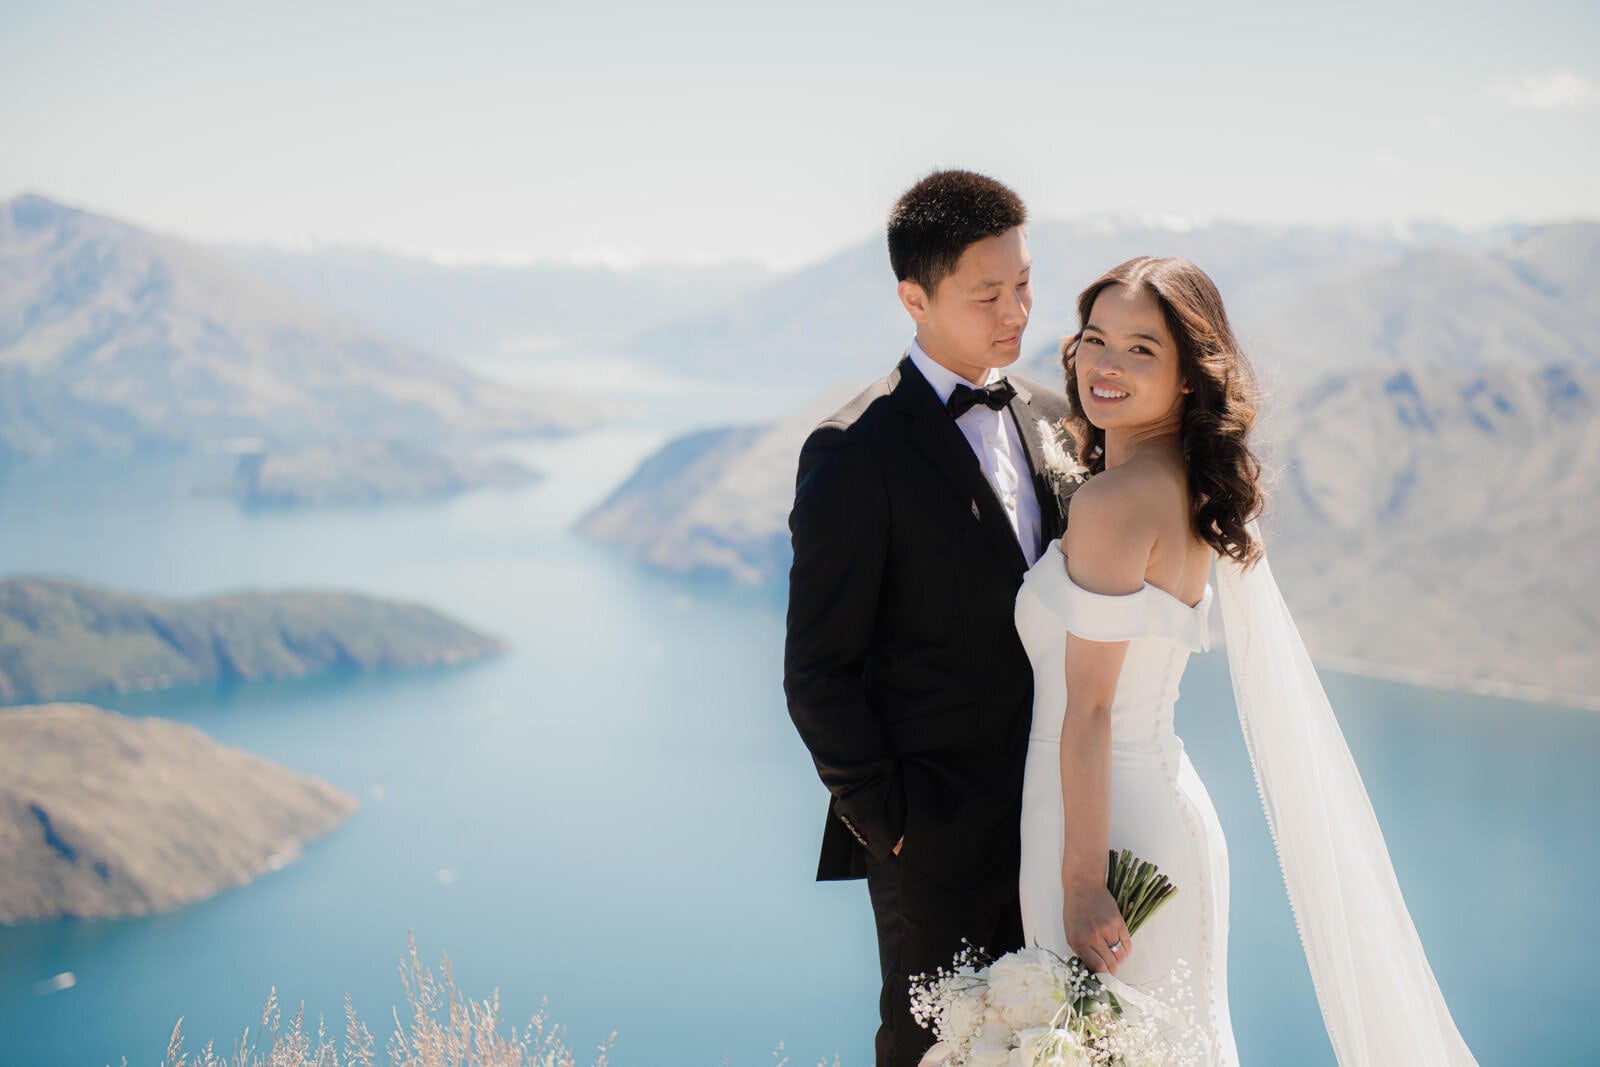 Chana & Desmond's Queenstown NZ Coromandel Peak Heli-Wedding Elopement